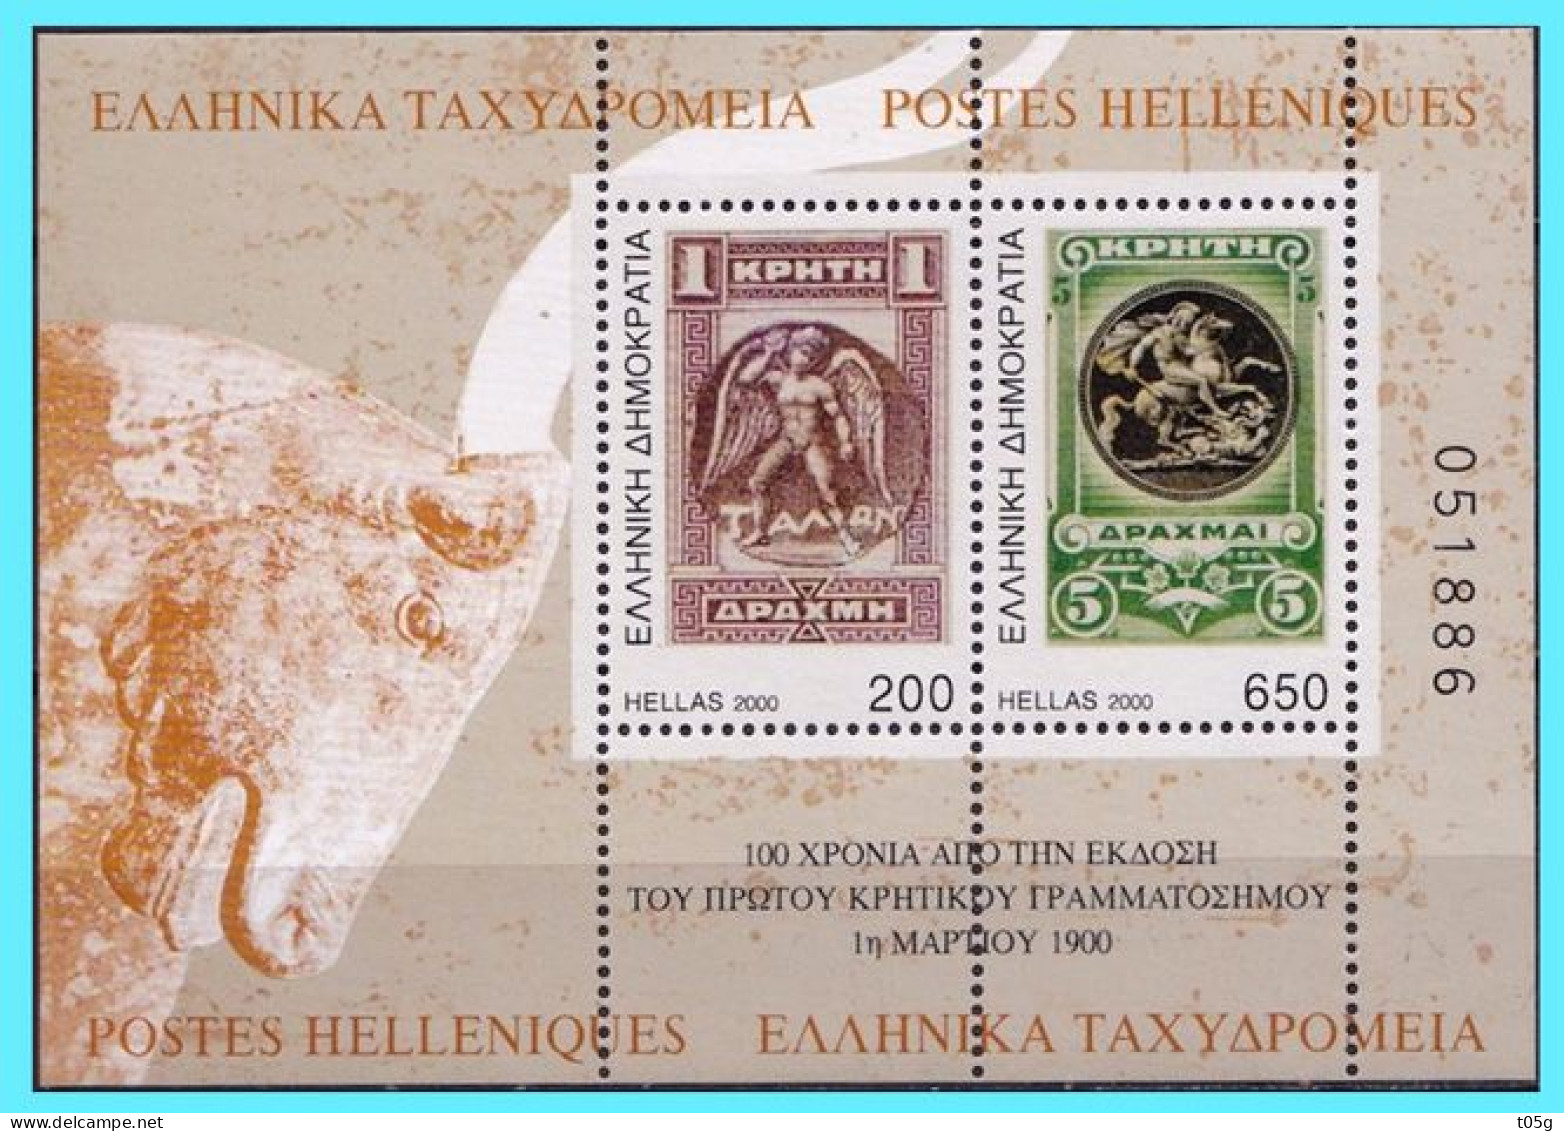 GREECE- GRECE- HELLAS 2000:  The Stamps Of Crete Miniature Sheet MNH** - Ungebraucht